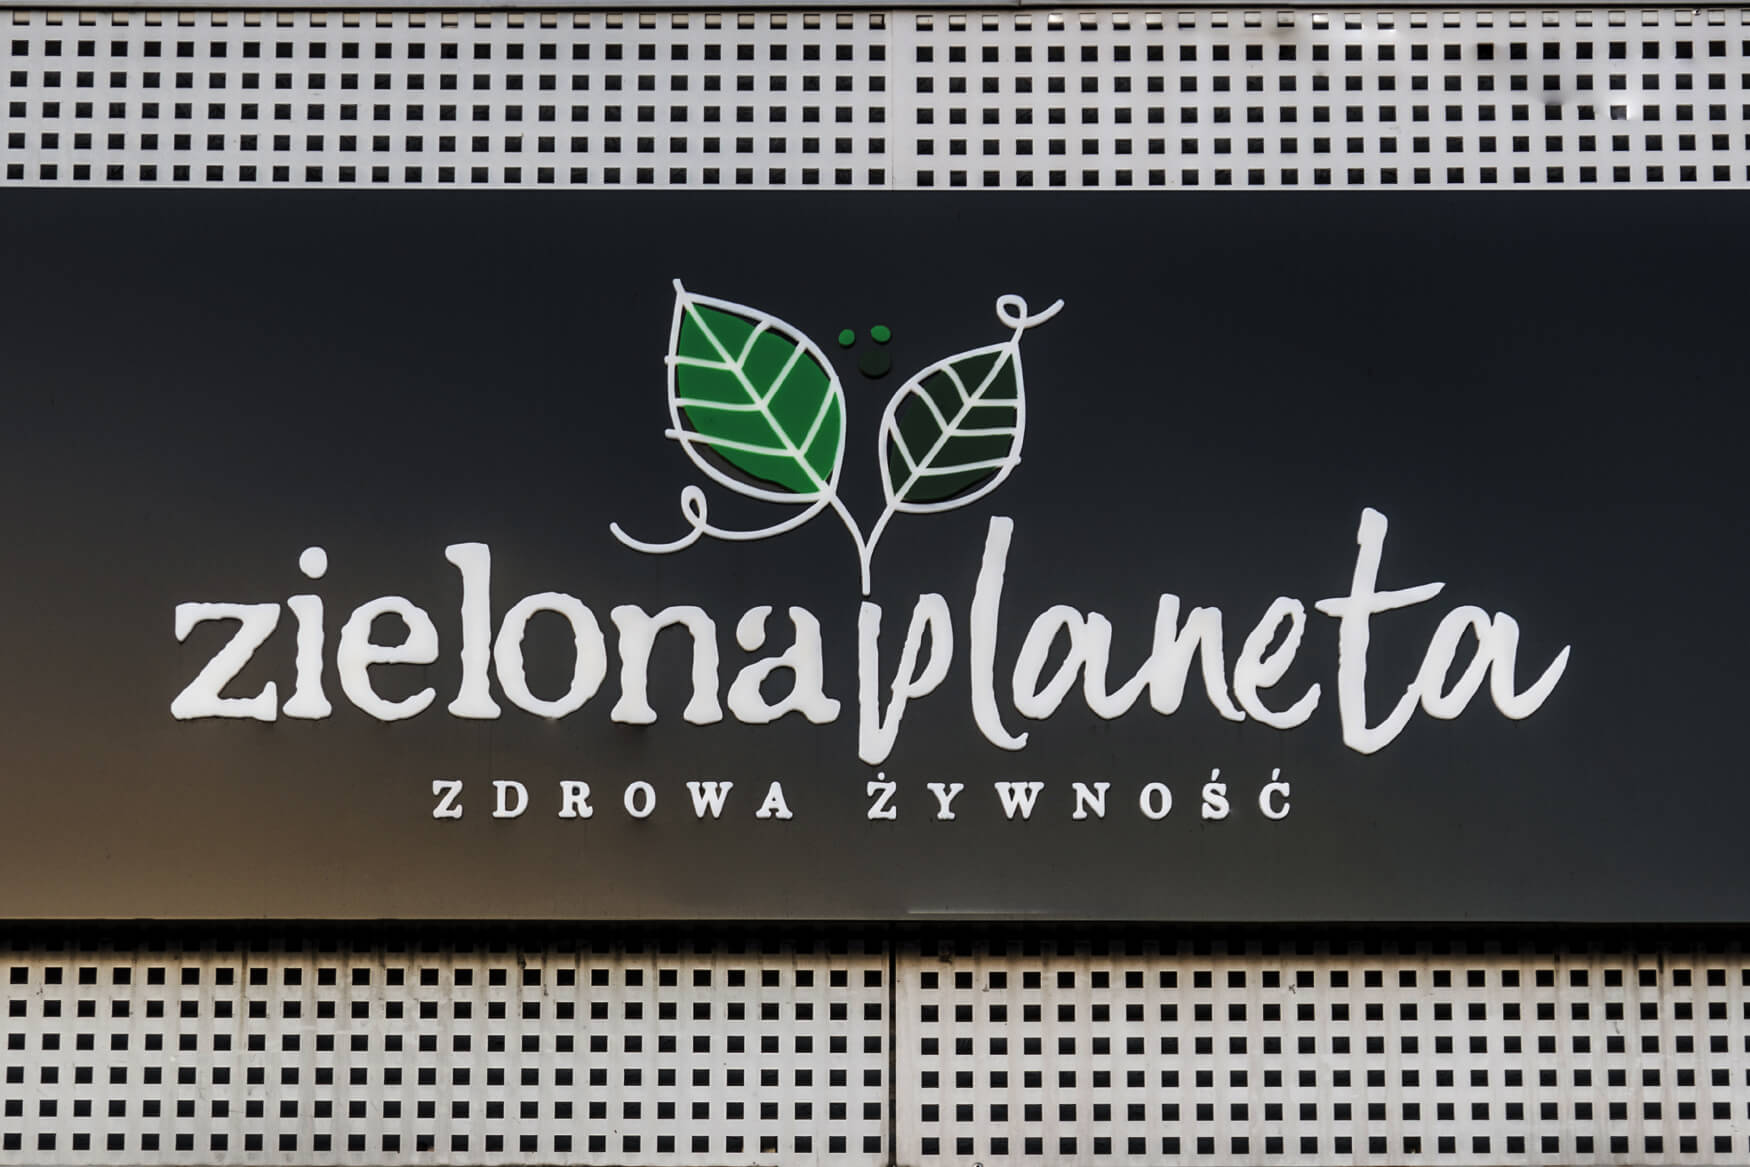 planeta verde - Zielona Planeta - cofre publicitario iluminado con letras y logotipo espacial